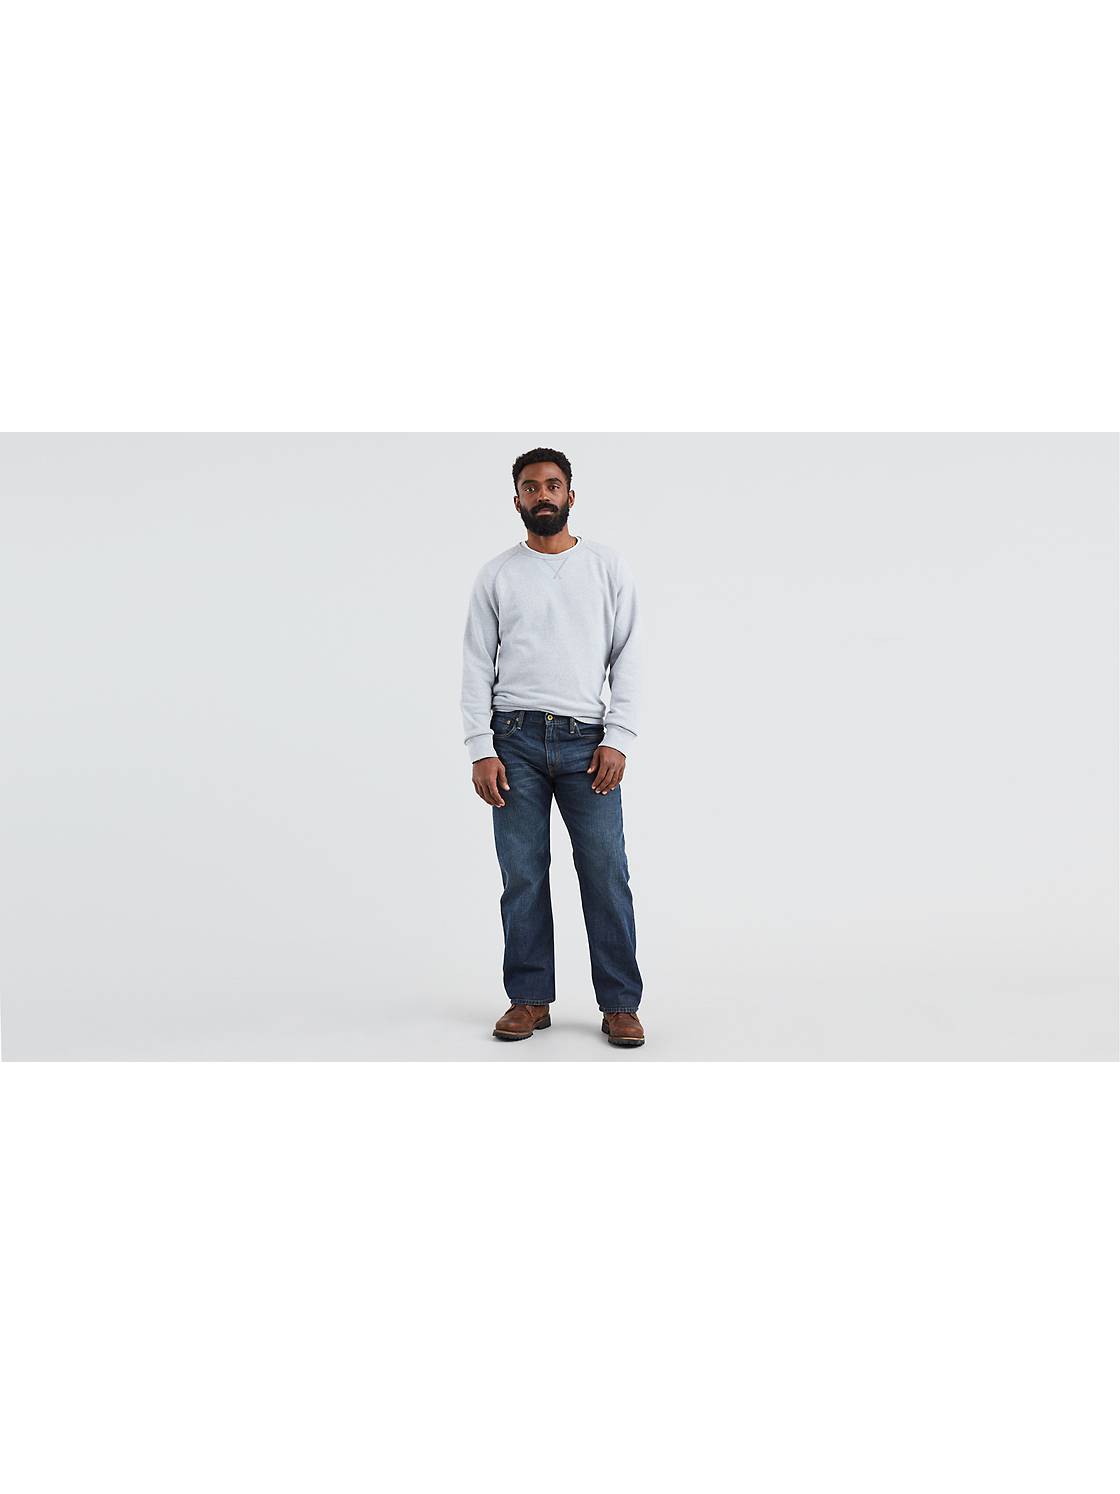 Men's Relaxed Fit Jeans: Shop Men's Loose Fit Jeans